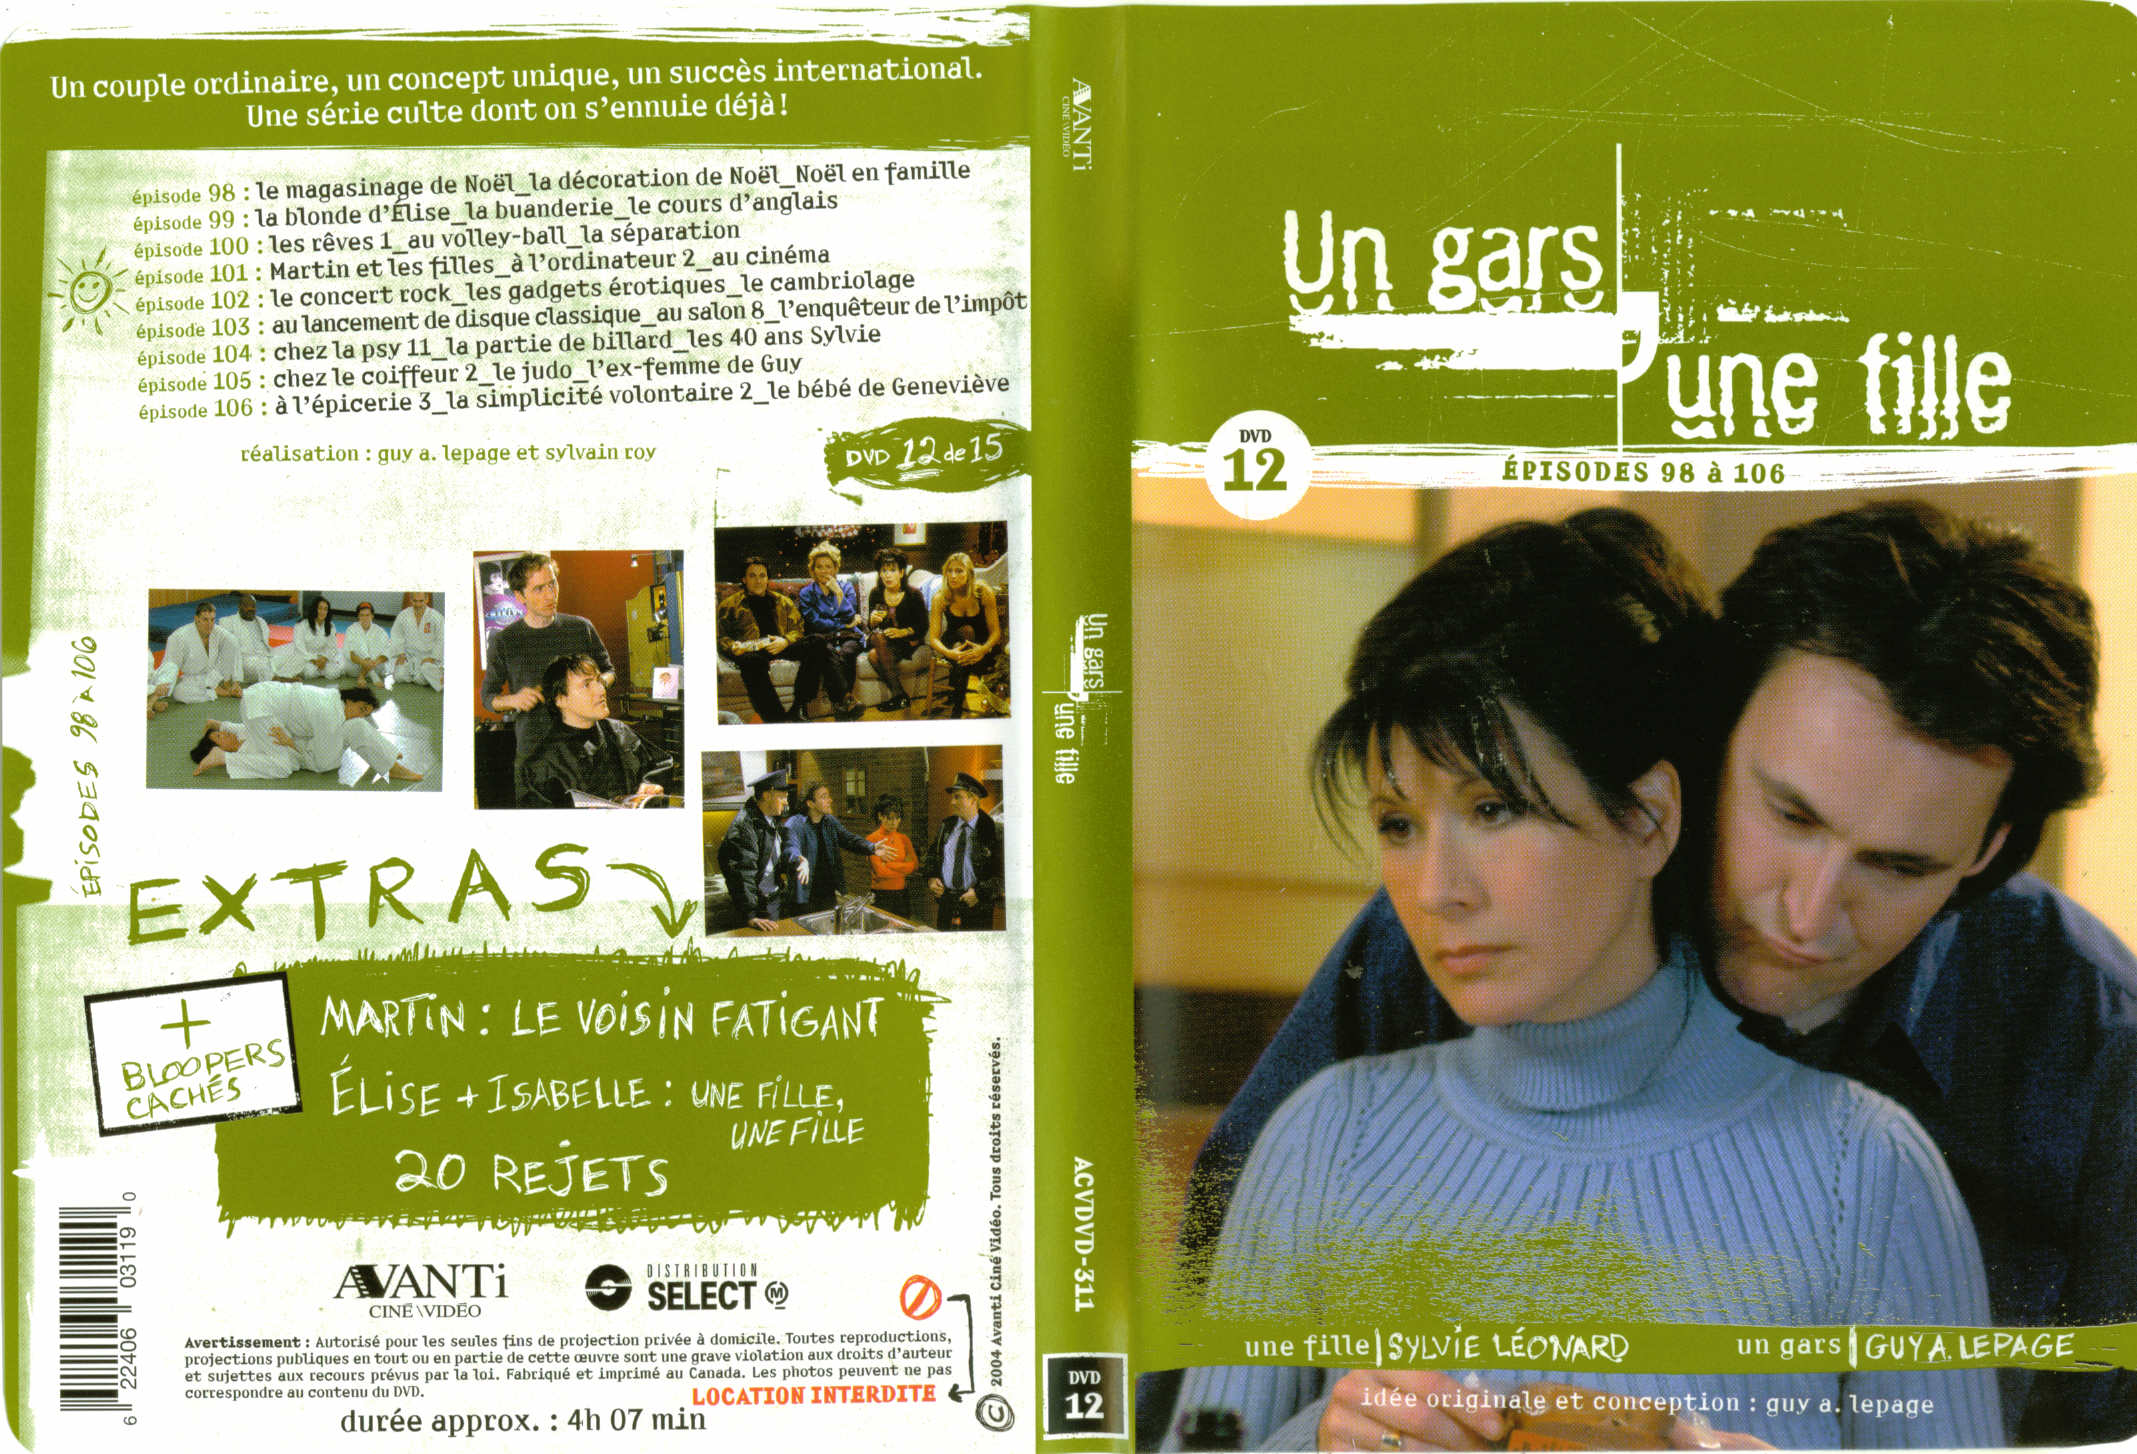 Jaquette DVD Un gars une fille (Canadienne) DVD 12